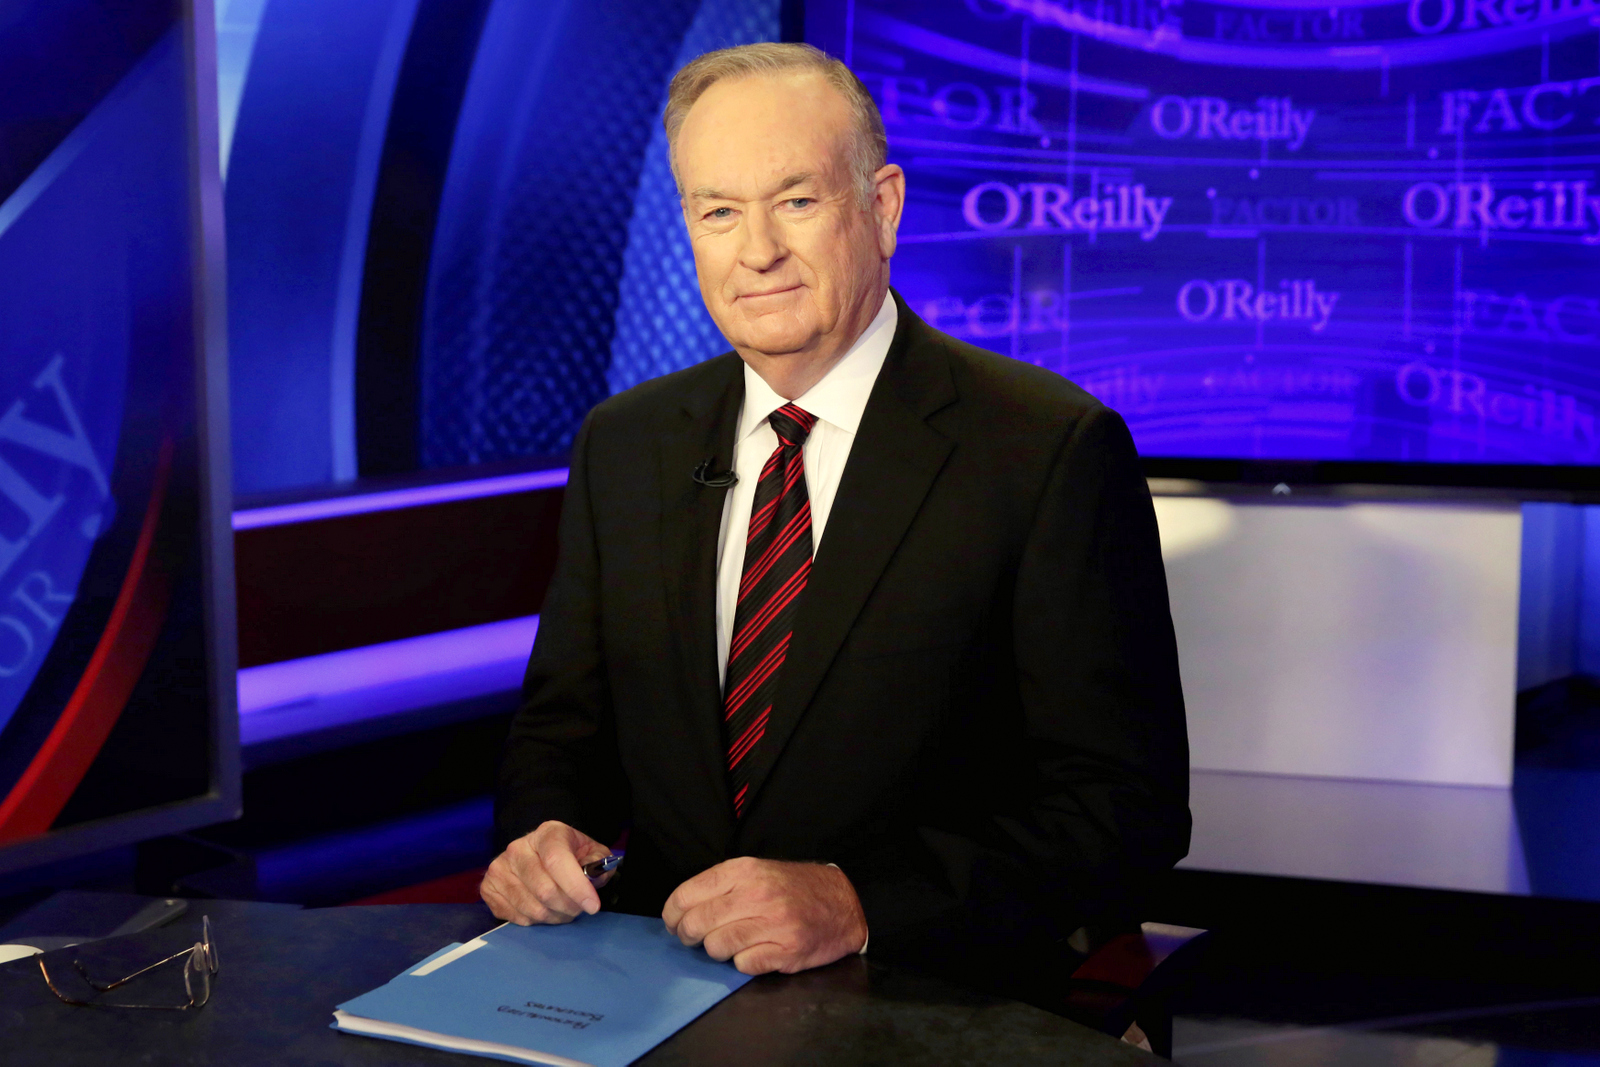 Host Bill O'Reilly of 